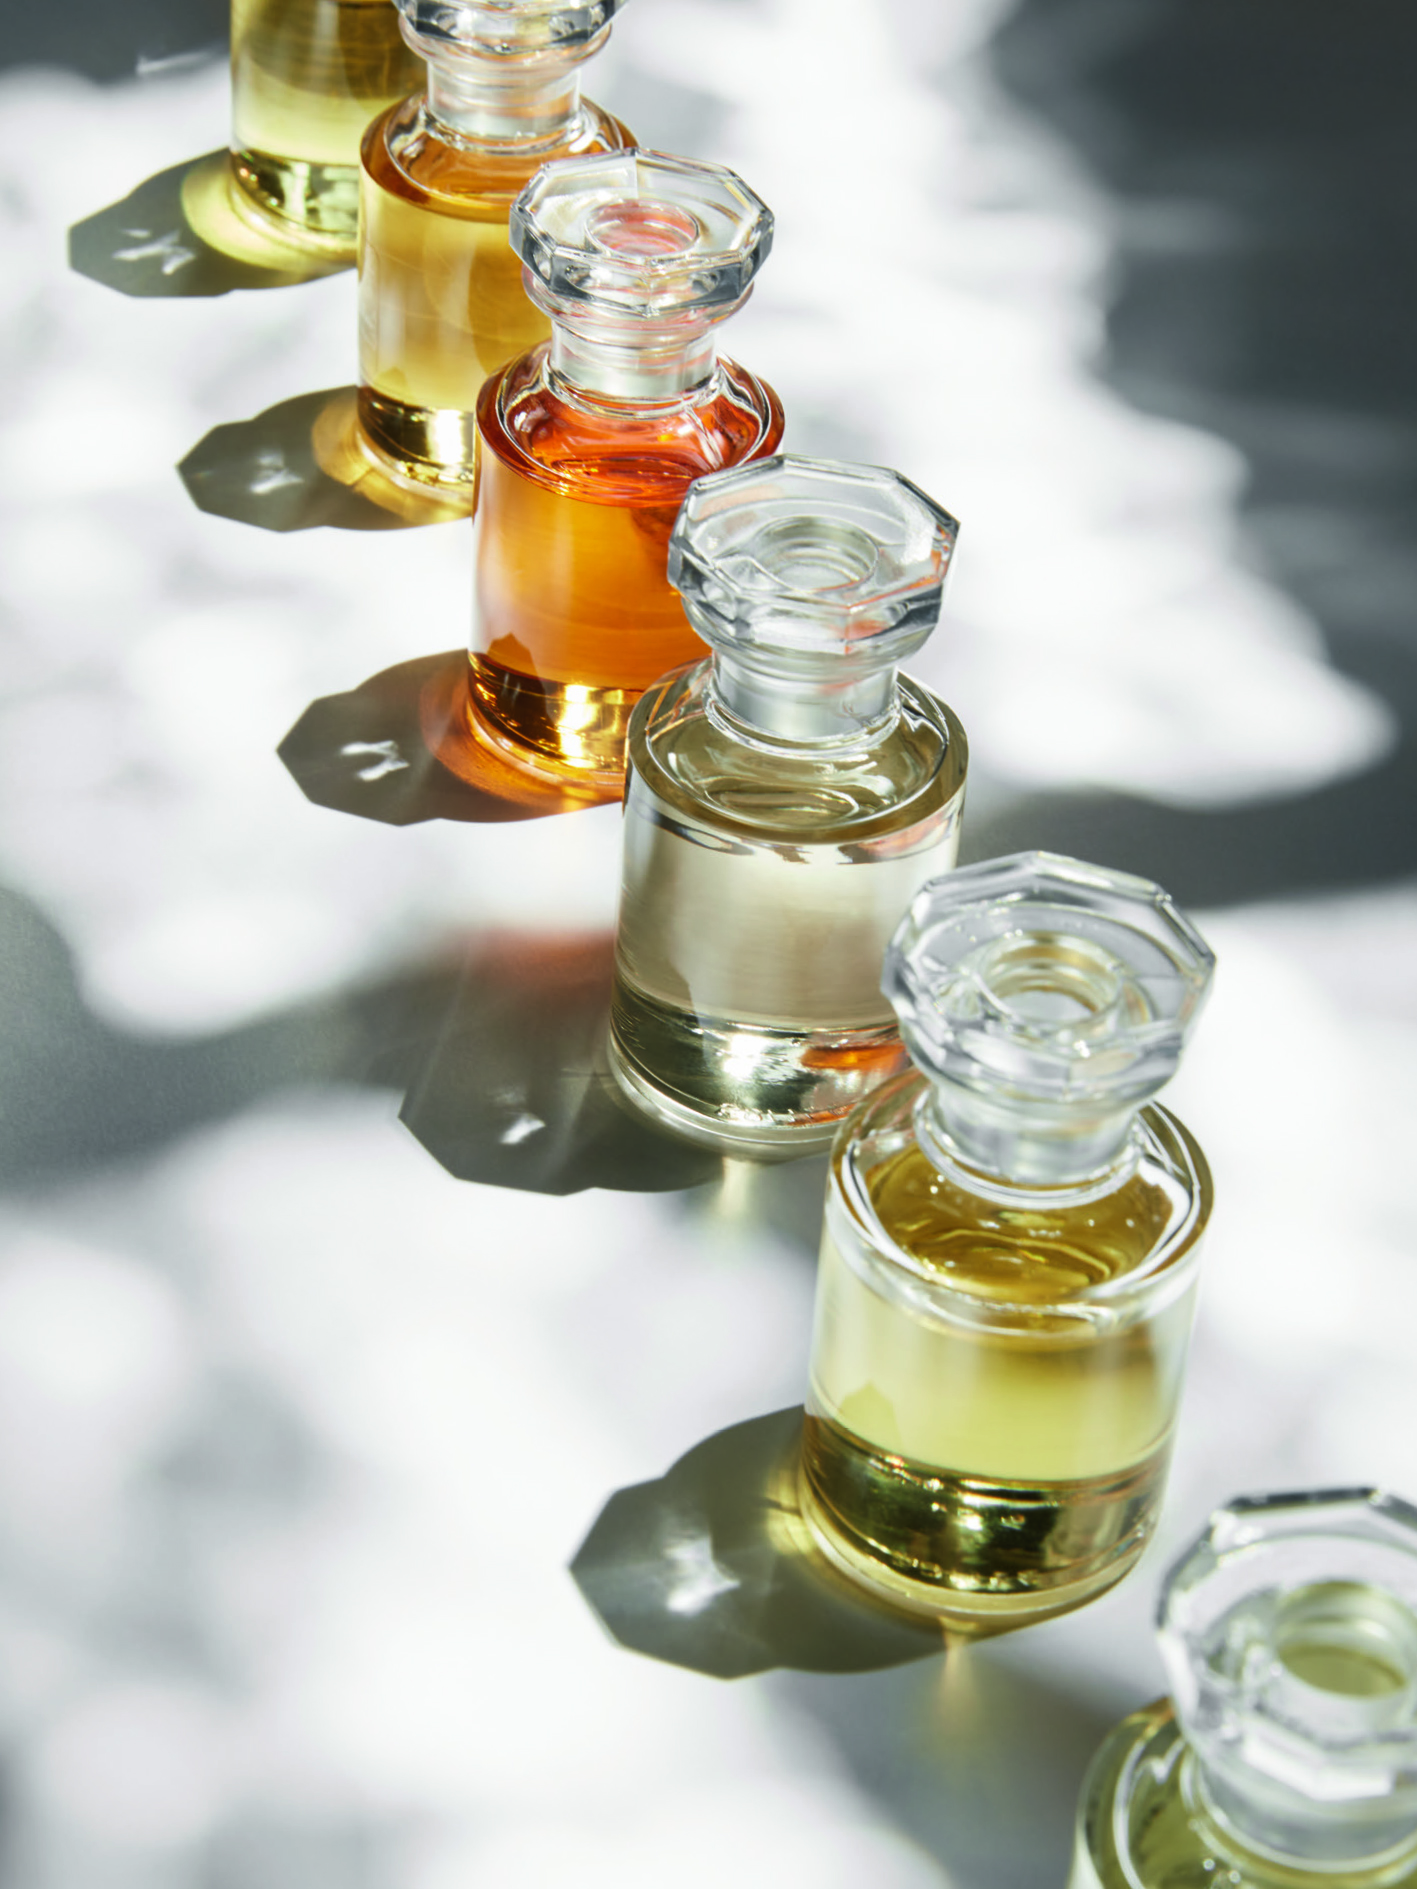 Les Parfums by Louis Vuitton - BeautyEQ